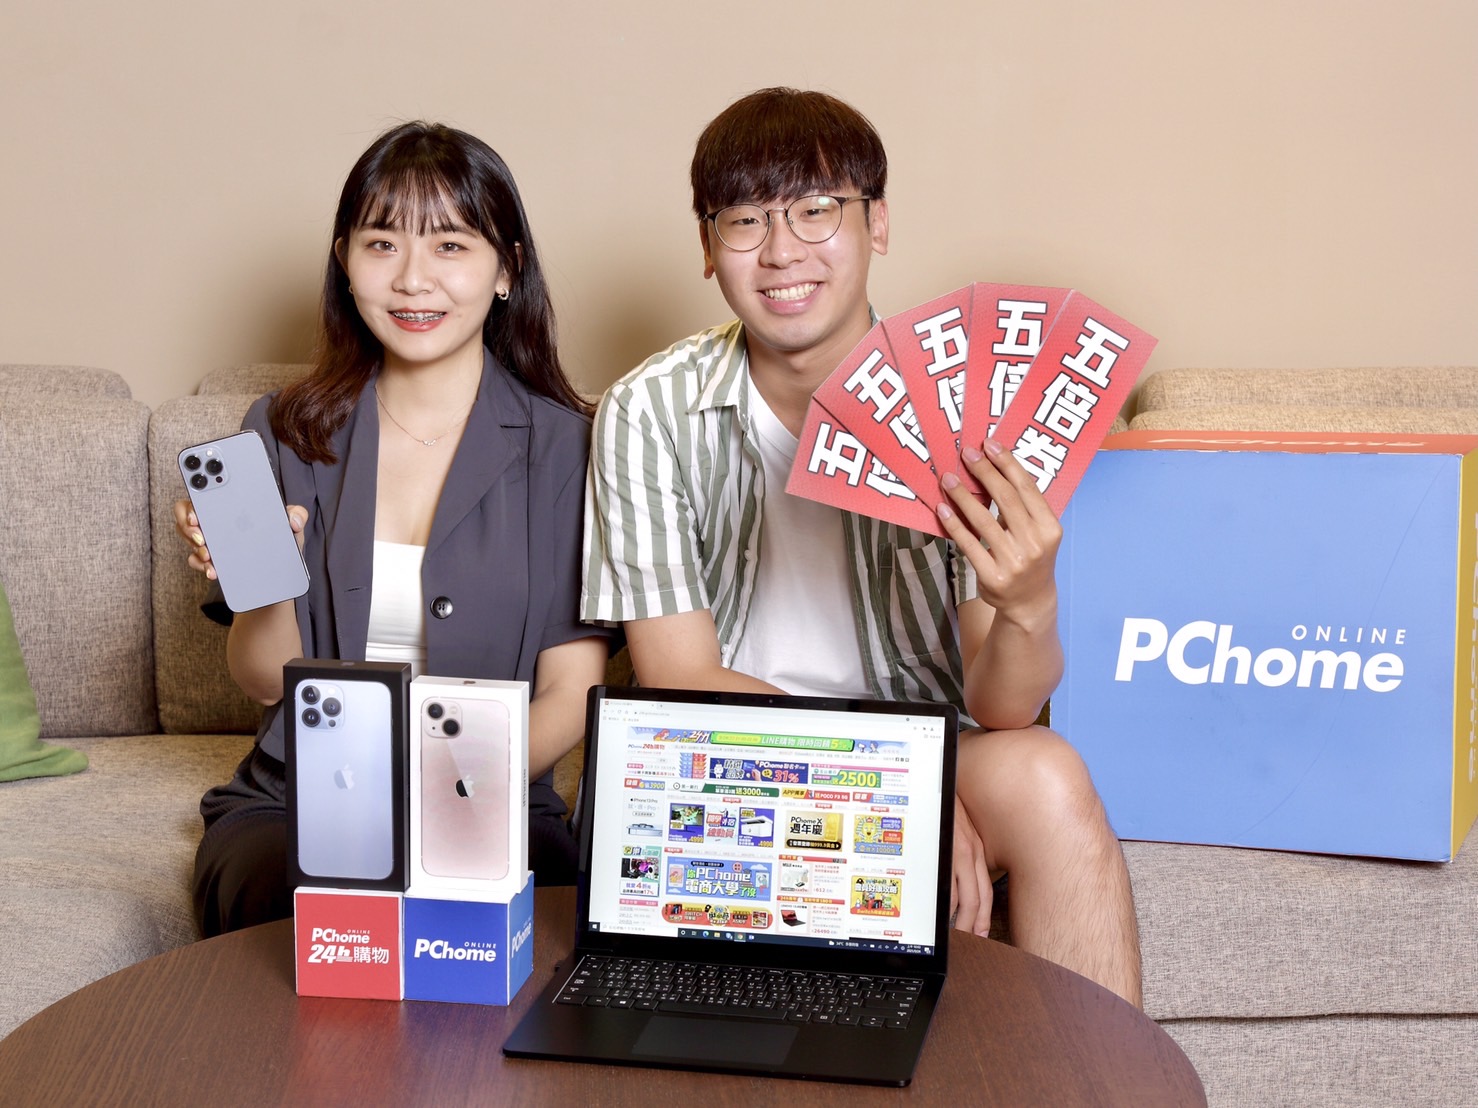 PChome網路家庭9月營收35.59億元 穩定成長YOY 18.56%  樂觀看旺第四季 迎智慧手機換機潮與政府振興券帶動經濟效益